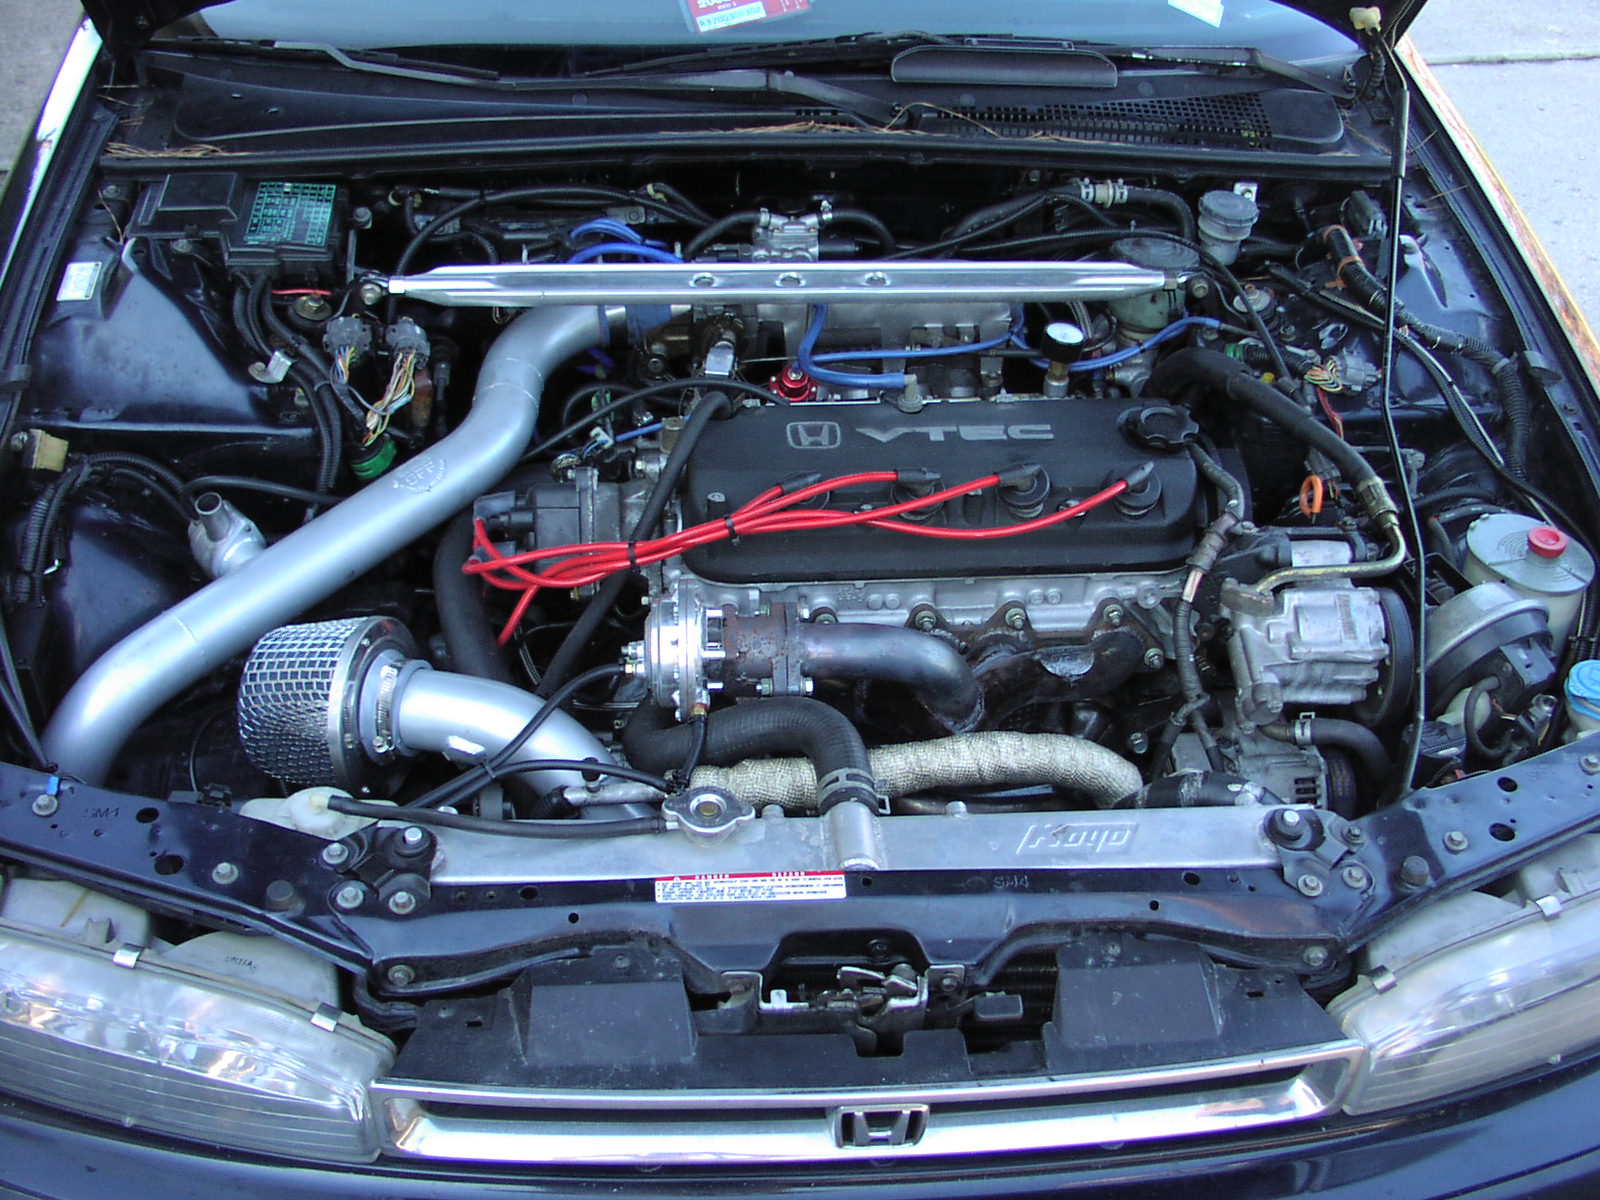 2001 Honda accord ex turbo kit #4